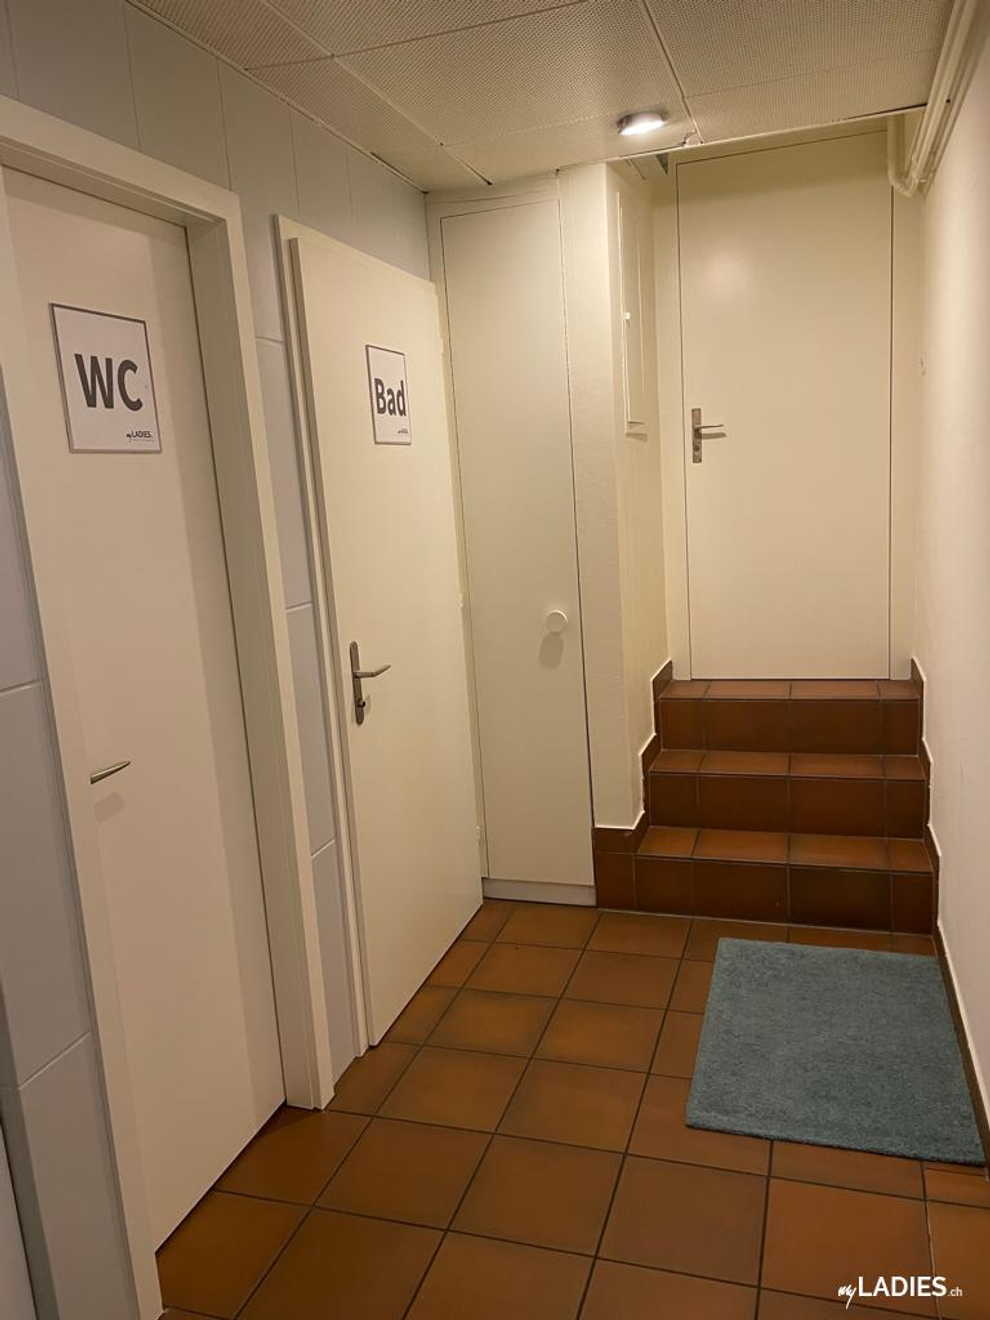 Zimmer / Rooms / Habitaciones in Baden / Bild 8